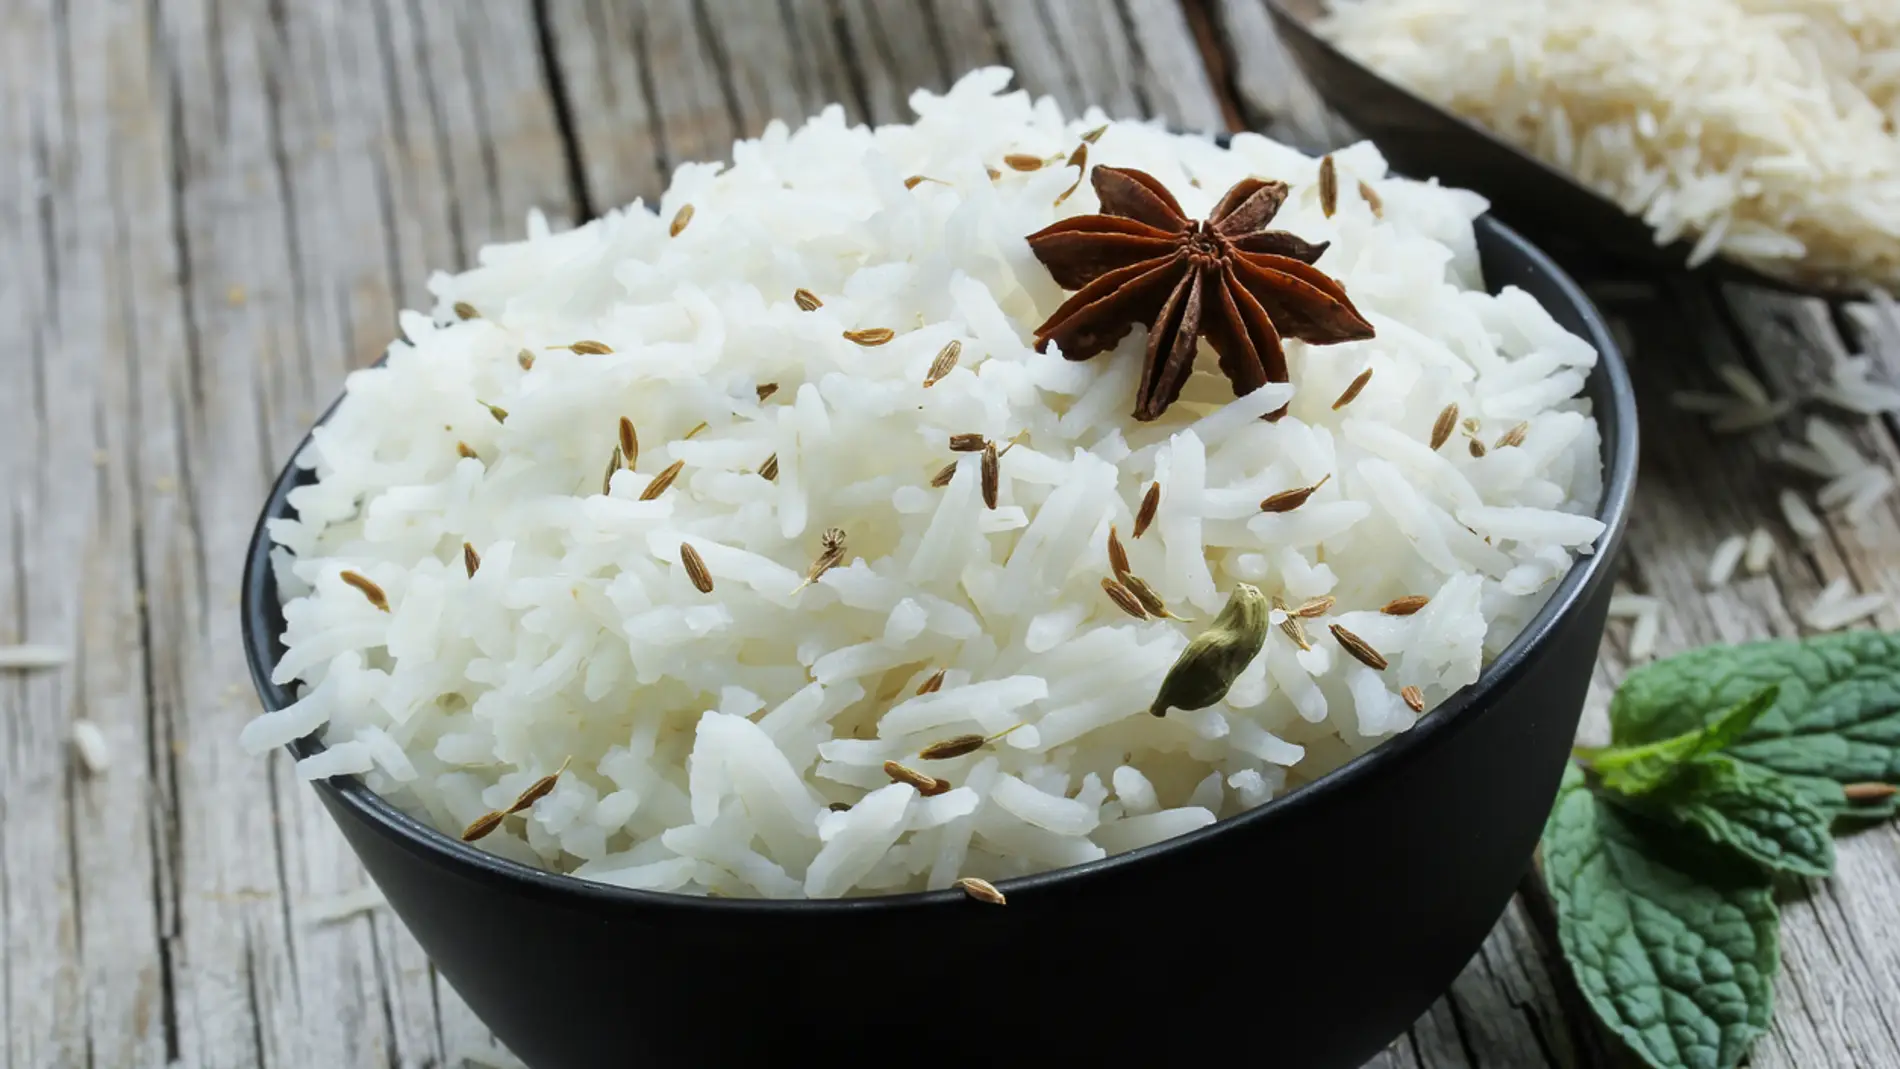 Receta al microondas: un exótico arroz basmati en tan solo 10 minutos